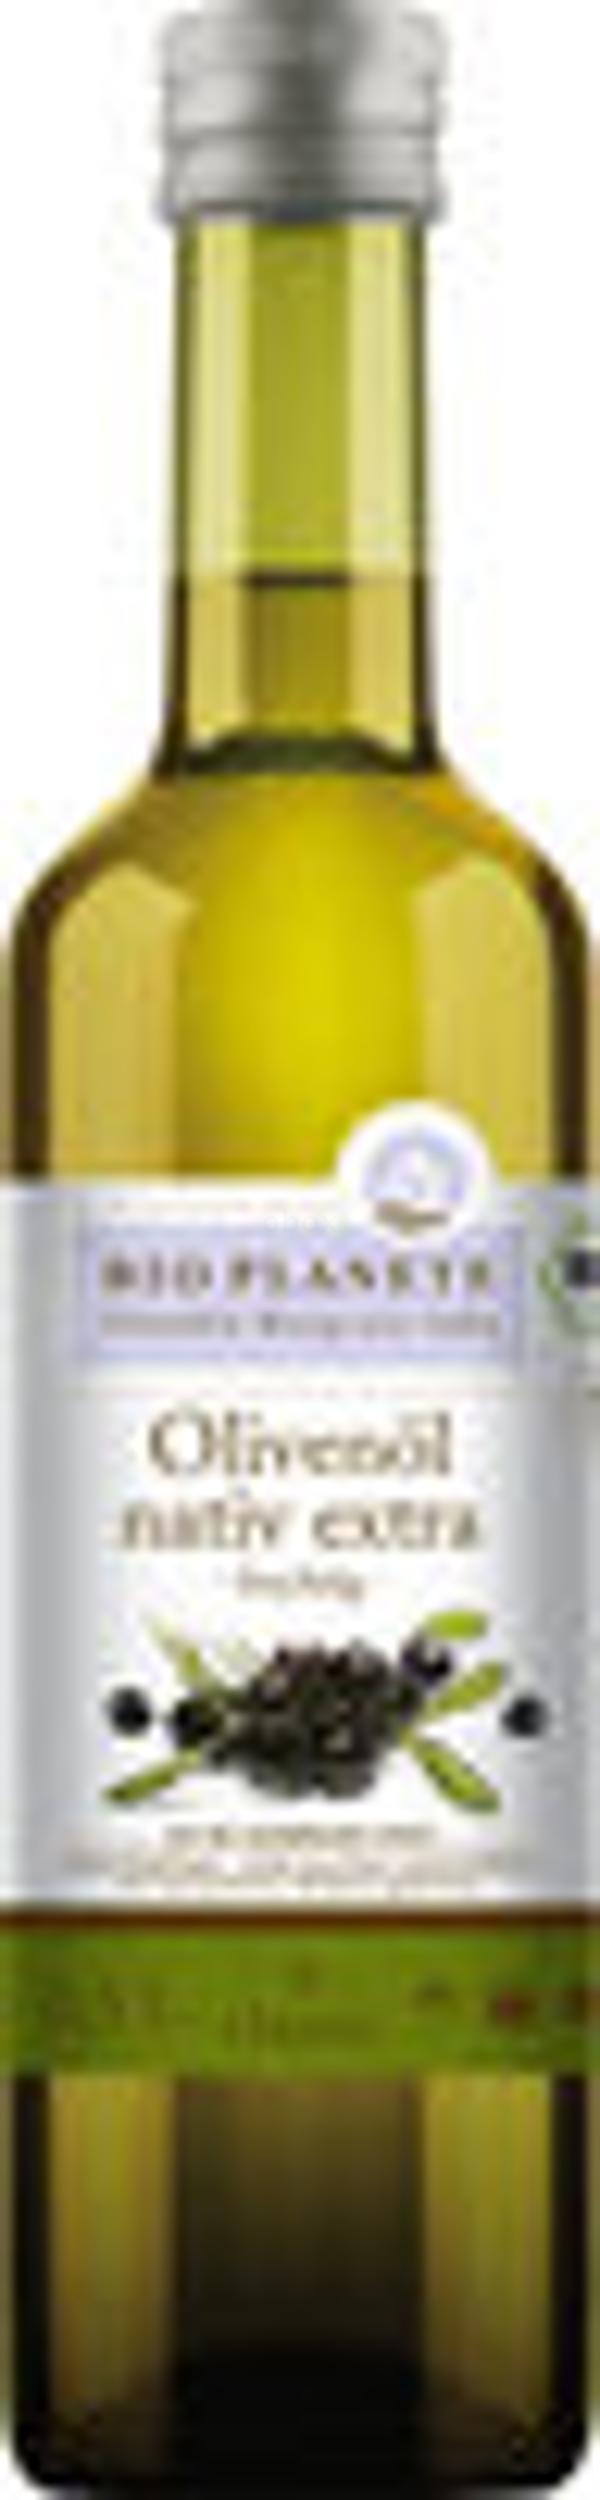 Produktfoto zu Olivenöl fruchtig - nativ extra - 500ml